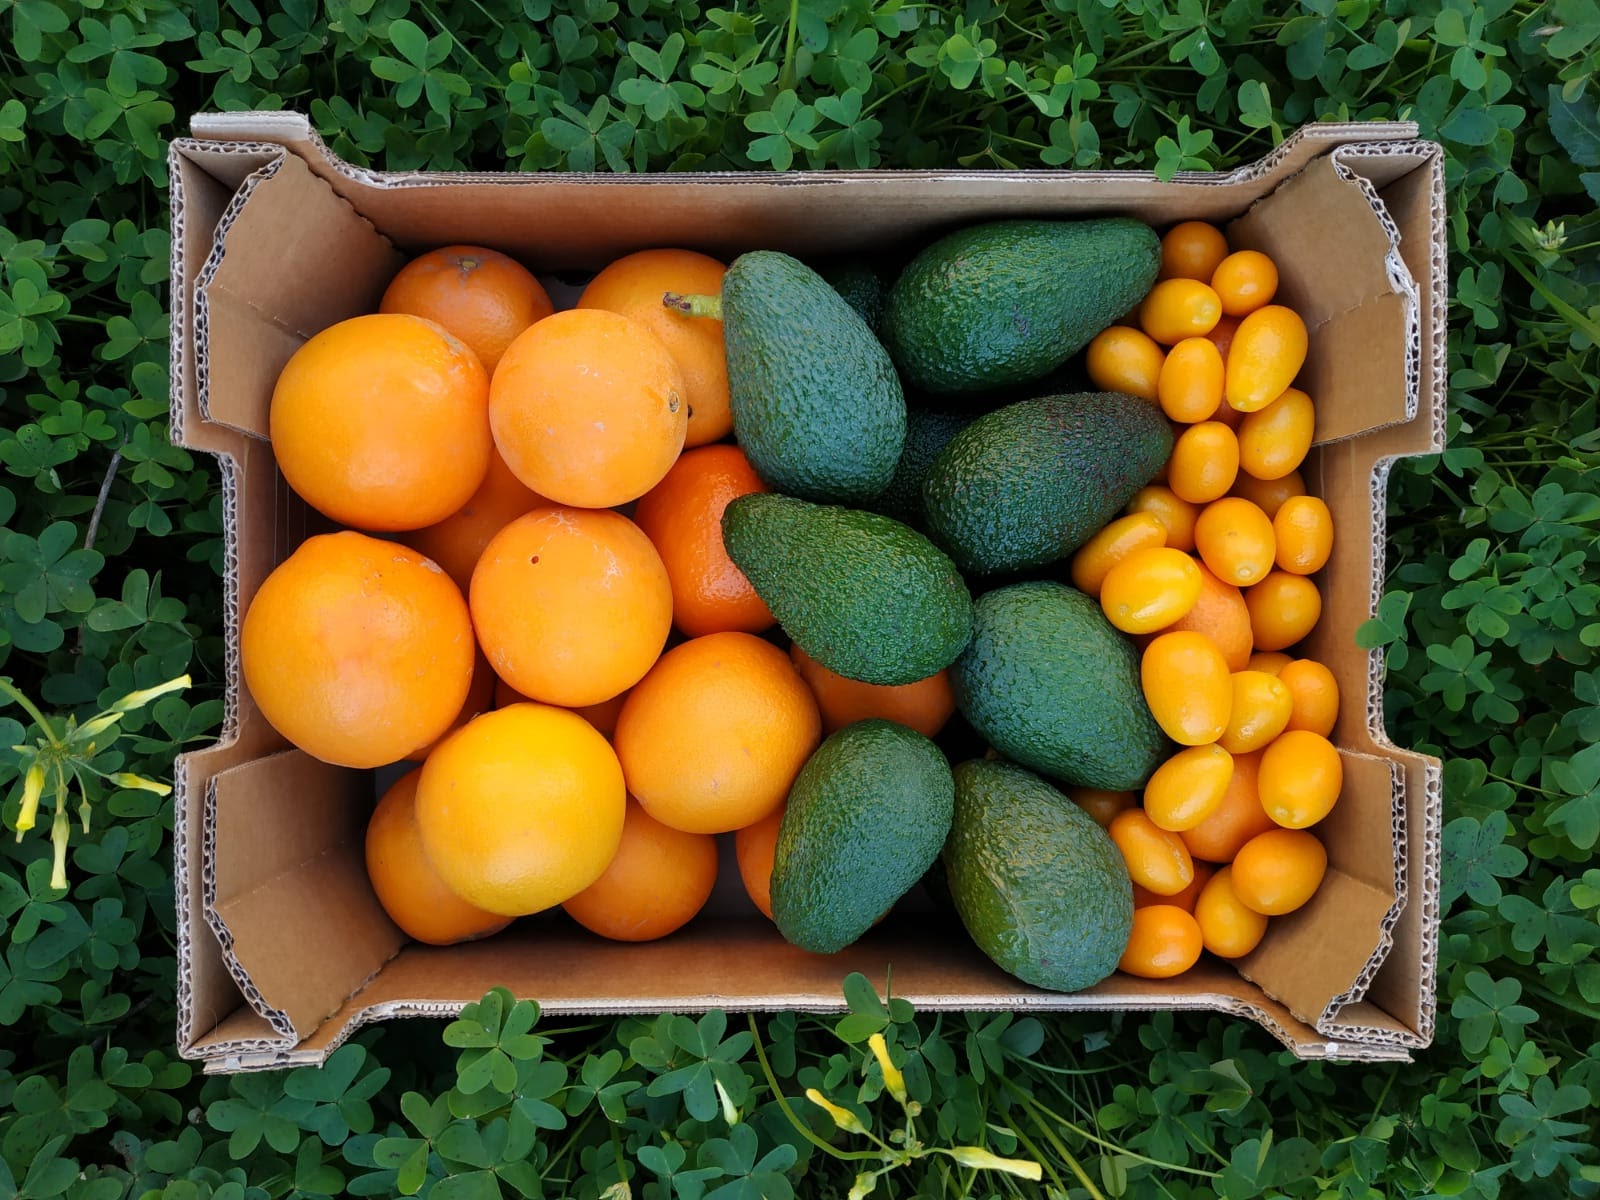 Appelsienen, avocado's en kumquats